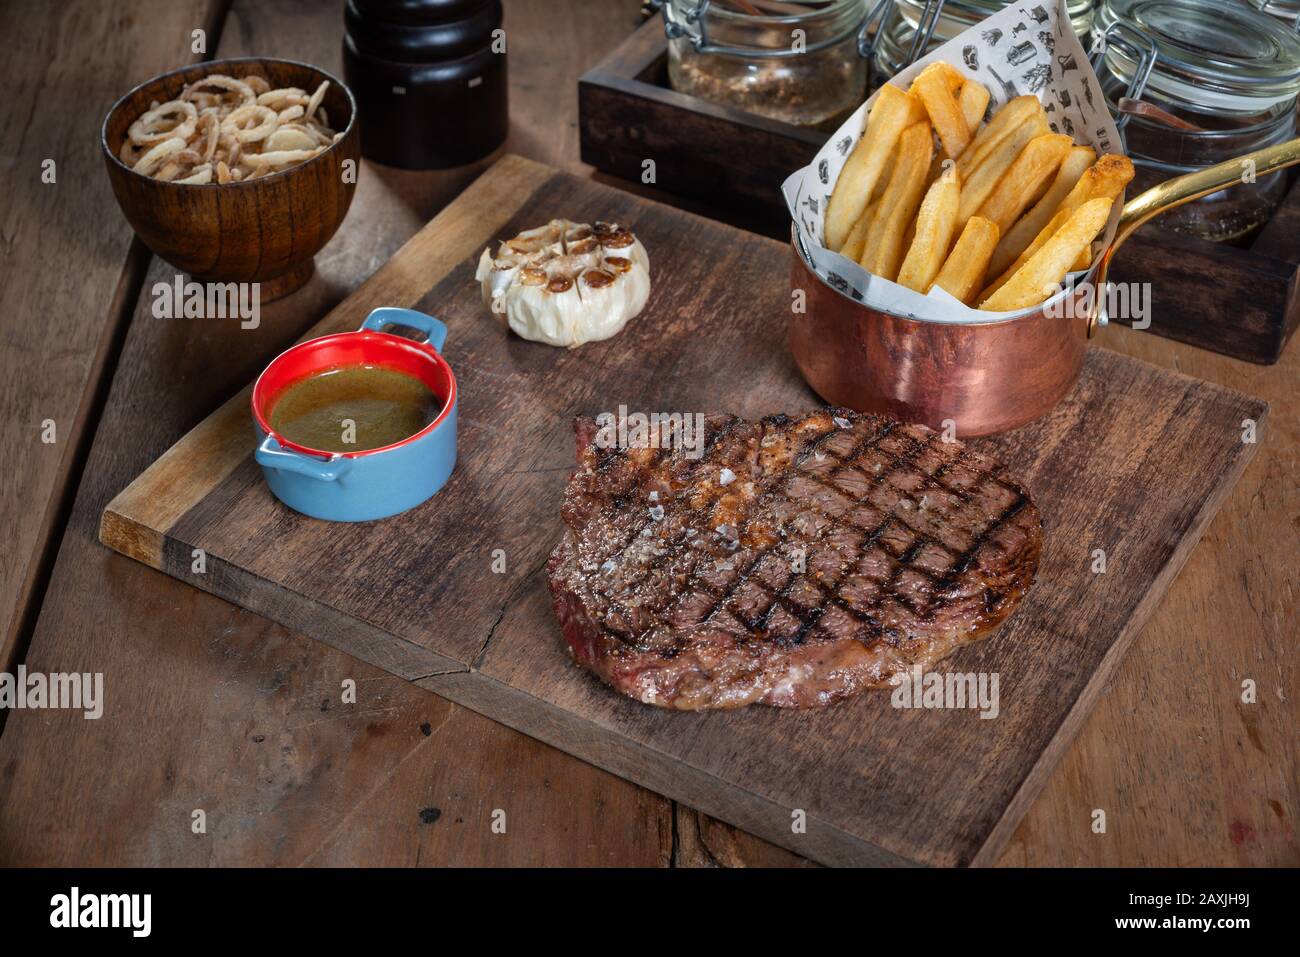 Steak on rustic cutting board Stock Photo